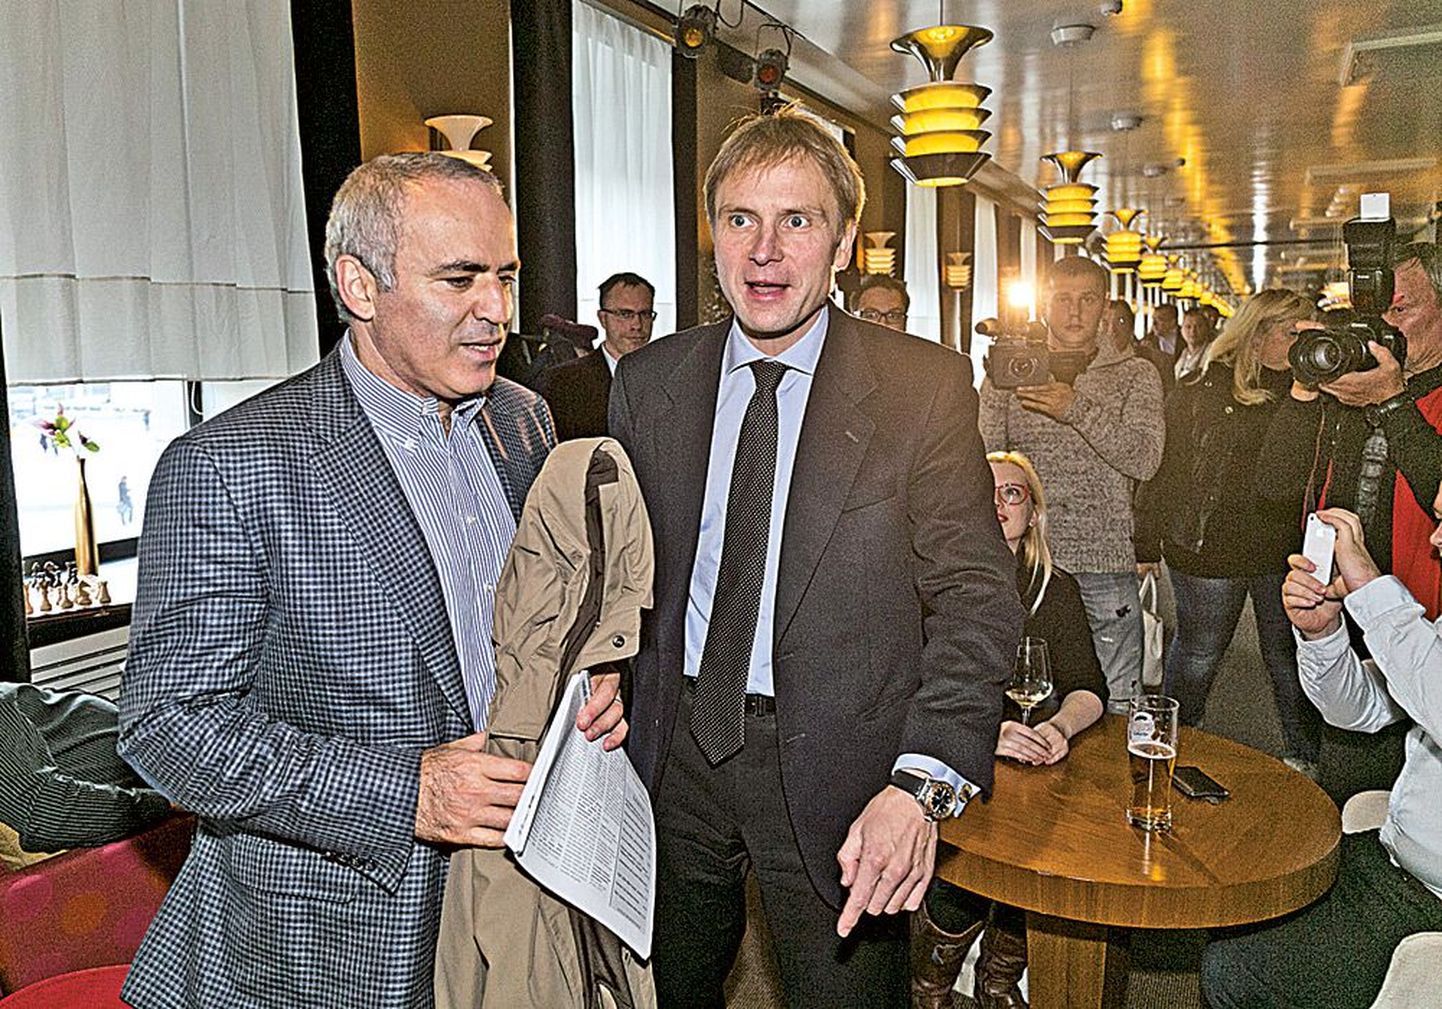 Гарри Каспаров выразил поддержку кандидату в мэры столицы от IRL Эрику-Нийлесу Кроссу (справа).